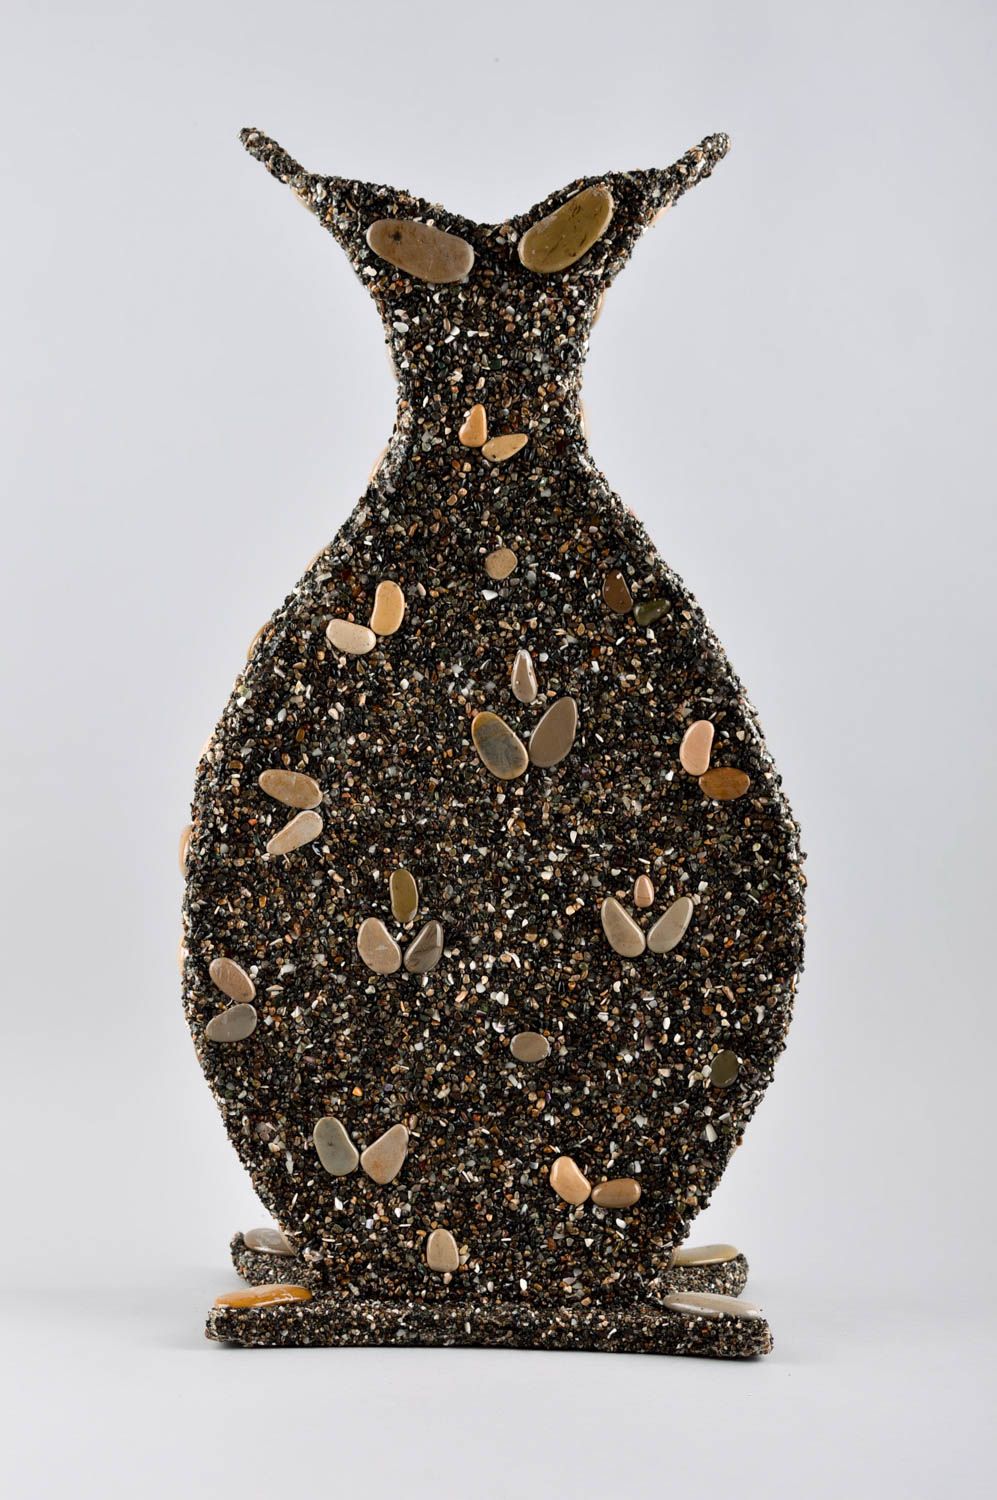 Handmade Deko Vase ausgefallener Dekoartikel Wohnzimmer Deko Geschenk Idee foto 2